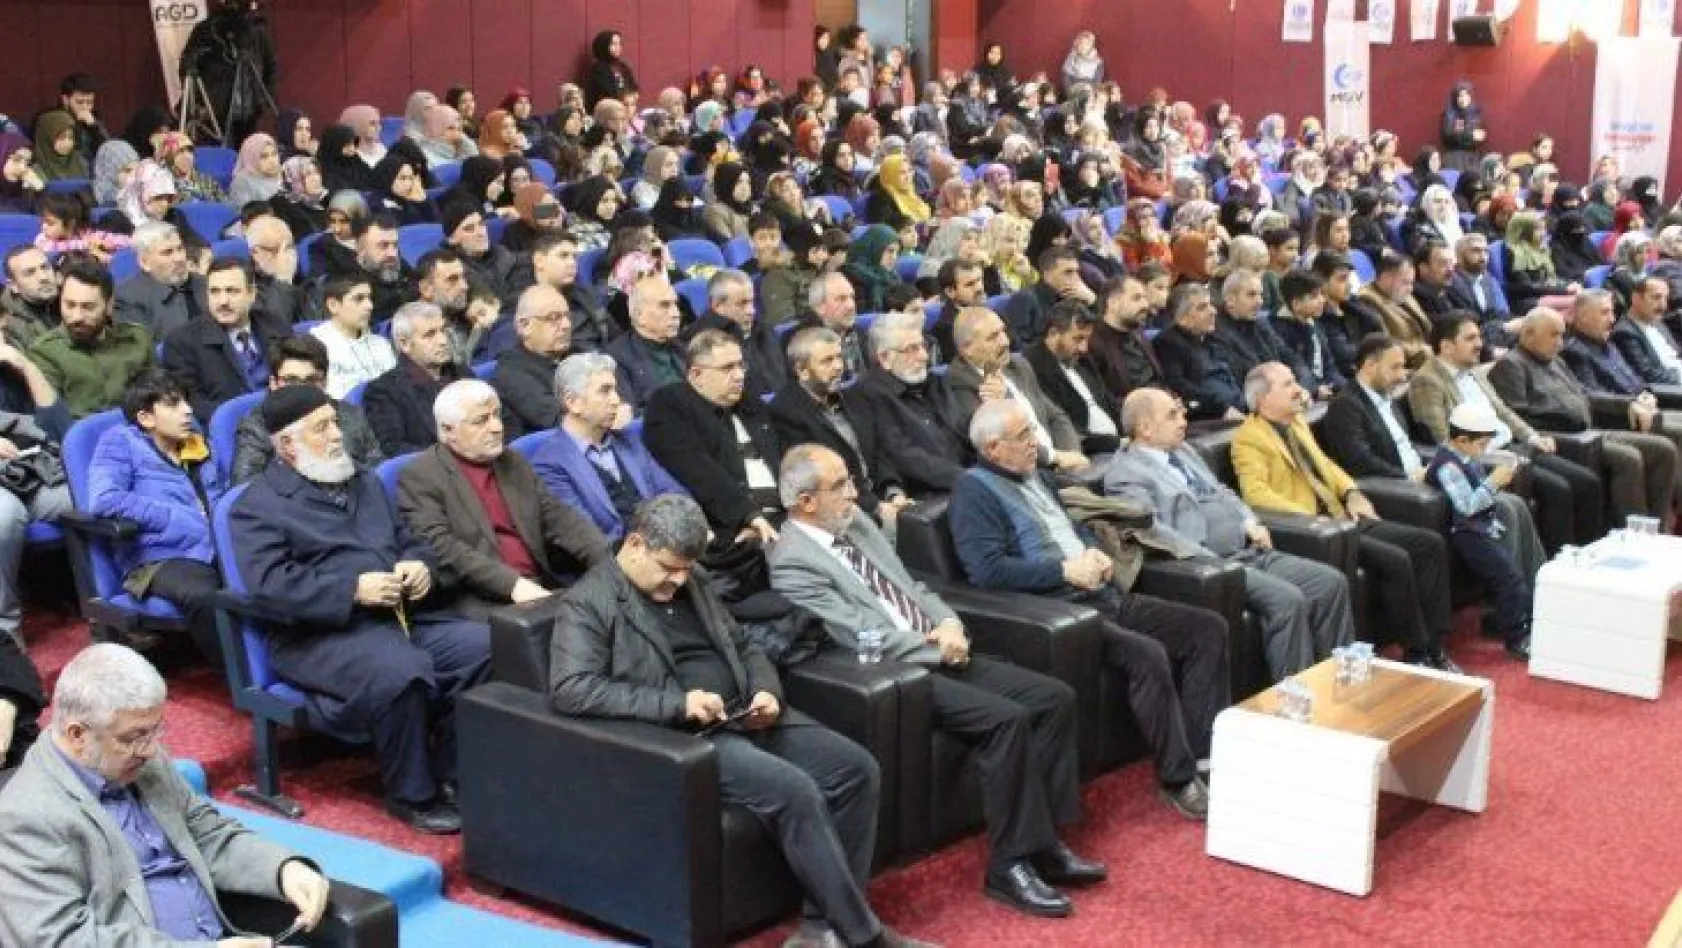 Elazığ'da Mekke'nin Fethi programı